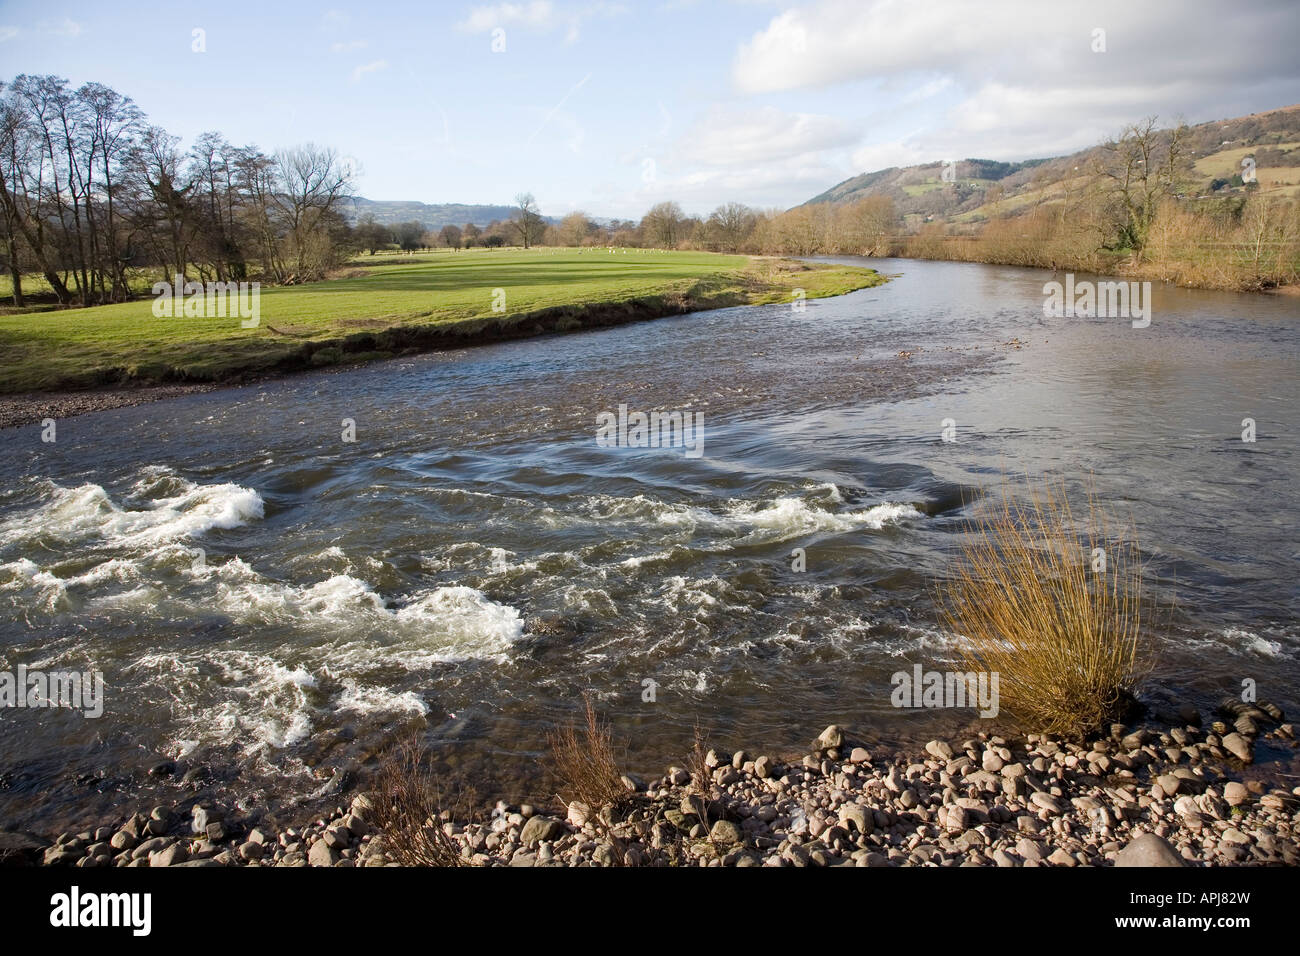 Ansa del fiume Usk in pianura alluvionale nei pressi di Abergavenny Wales UK Foto Stock